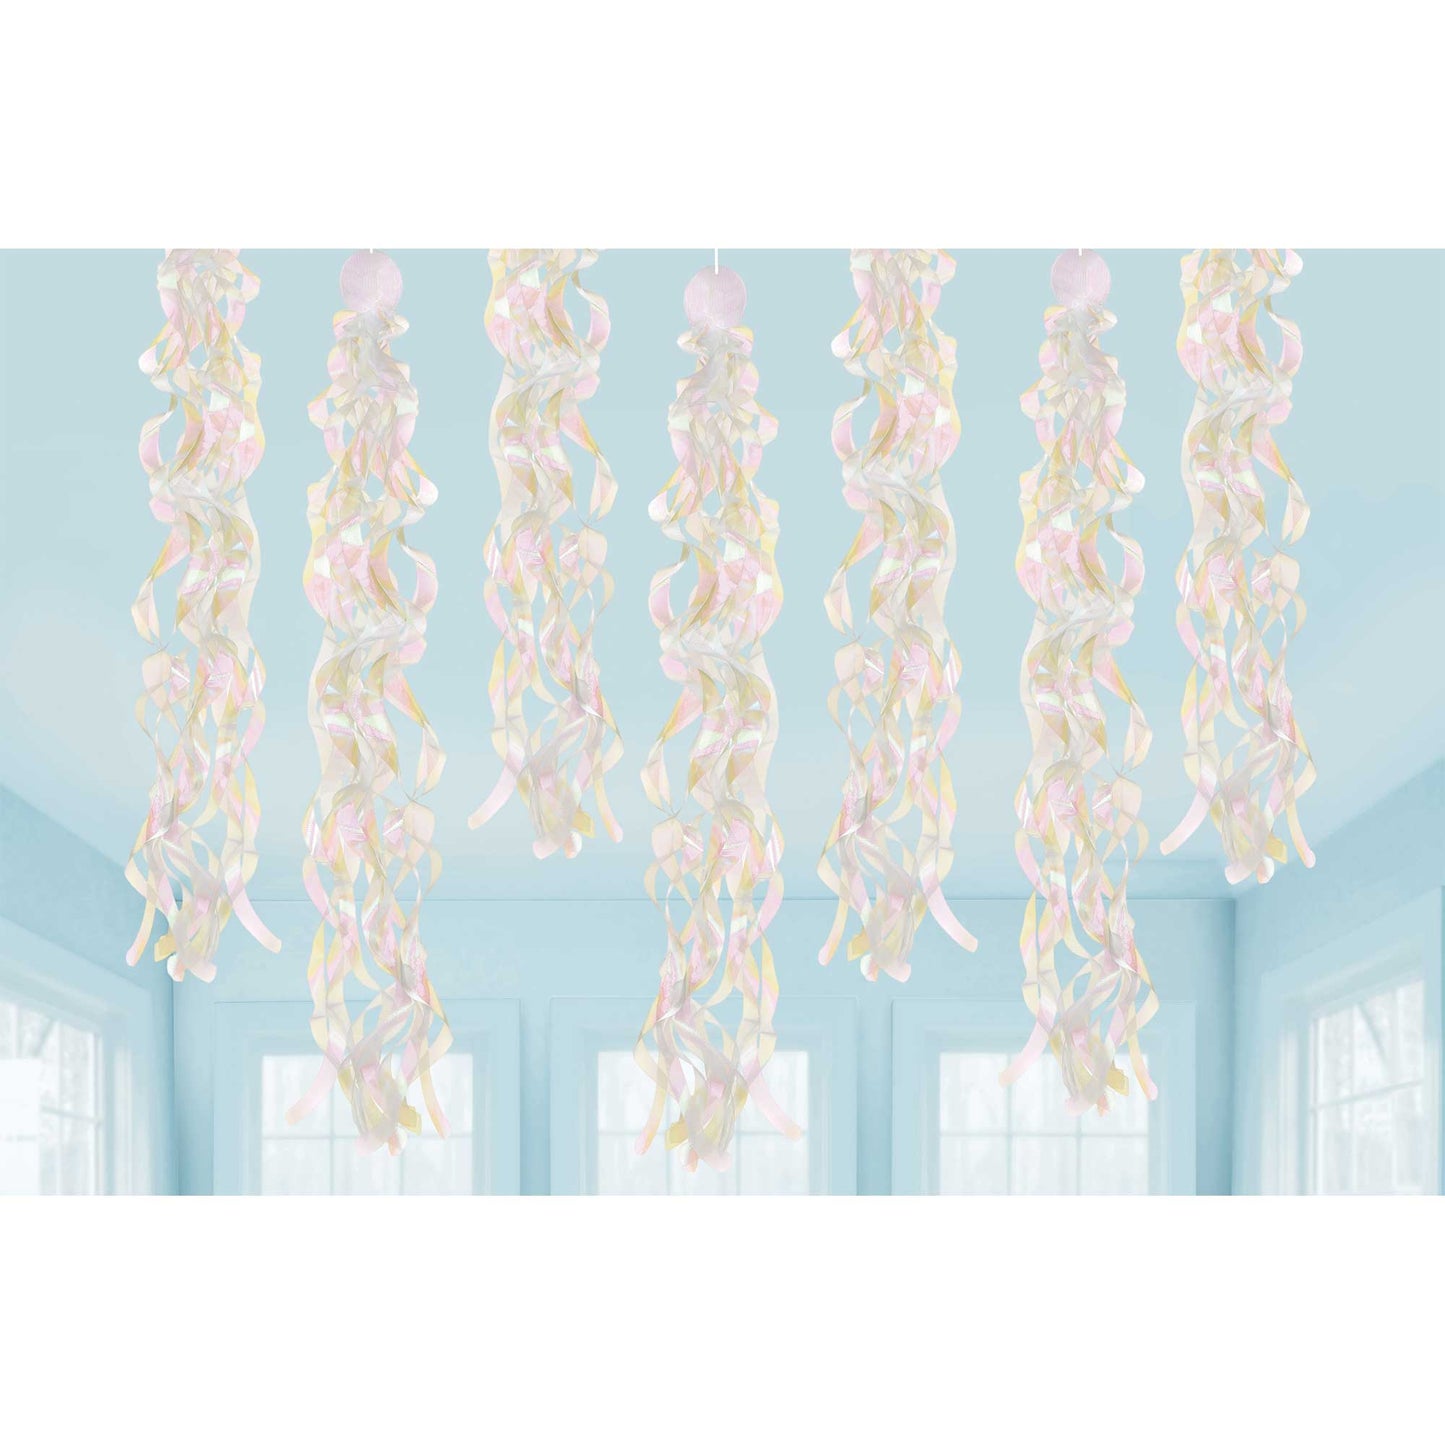 Luminous Birthday Iridescent Swirls Hanging Decorations